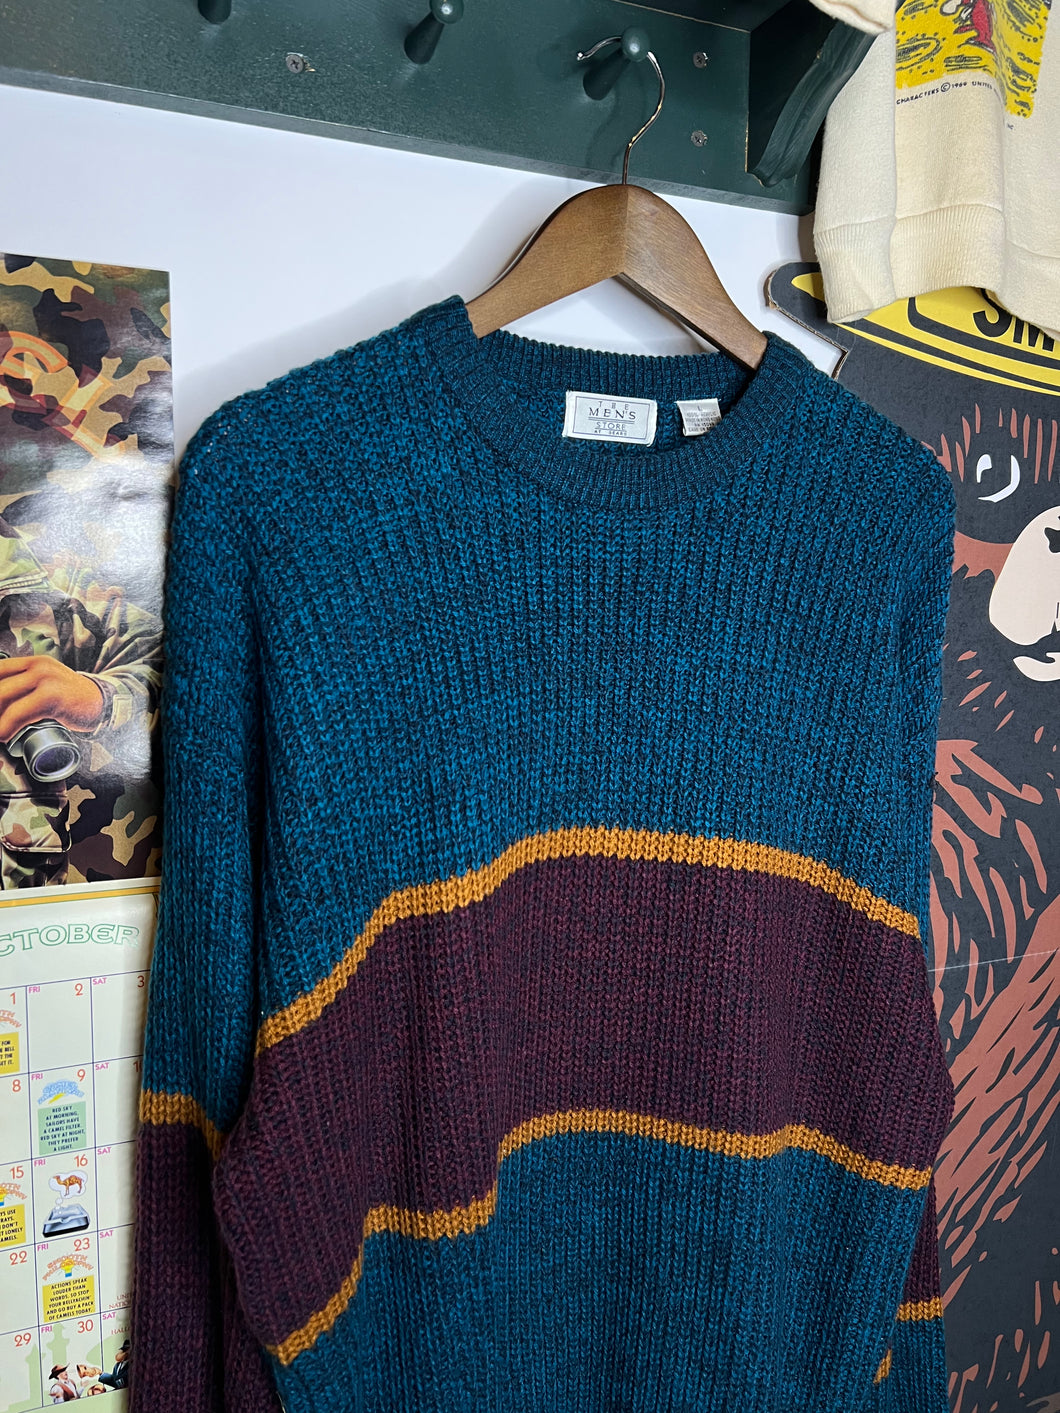 Vintage Sears Knit Sweater (L)